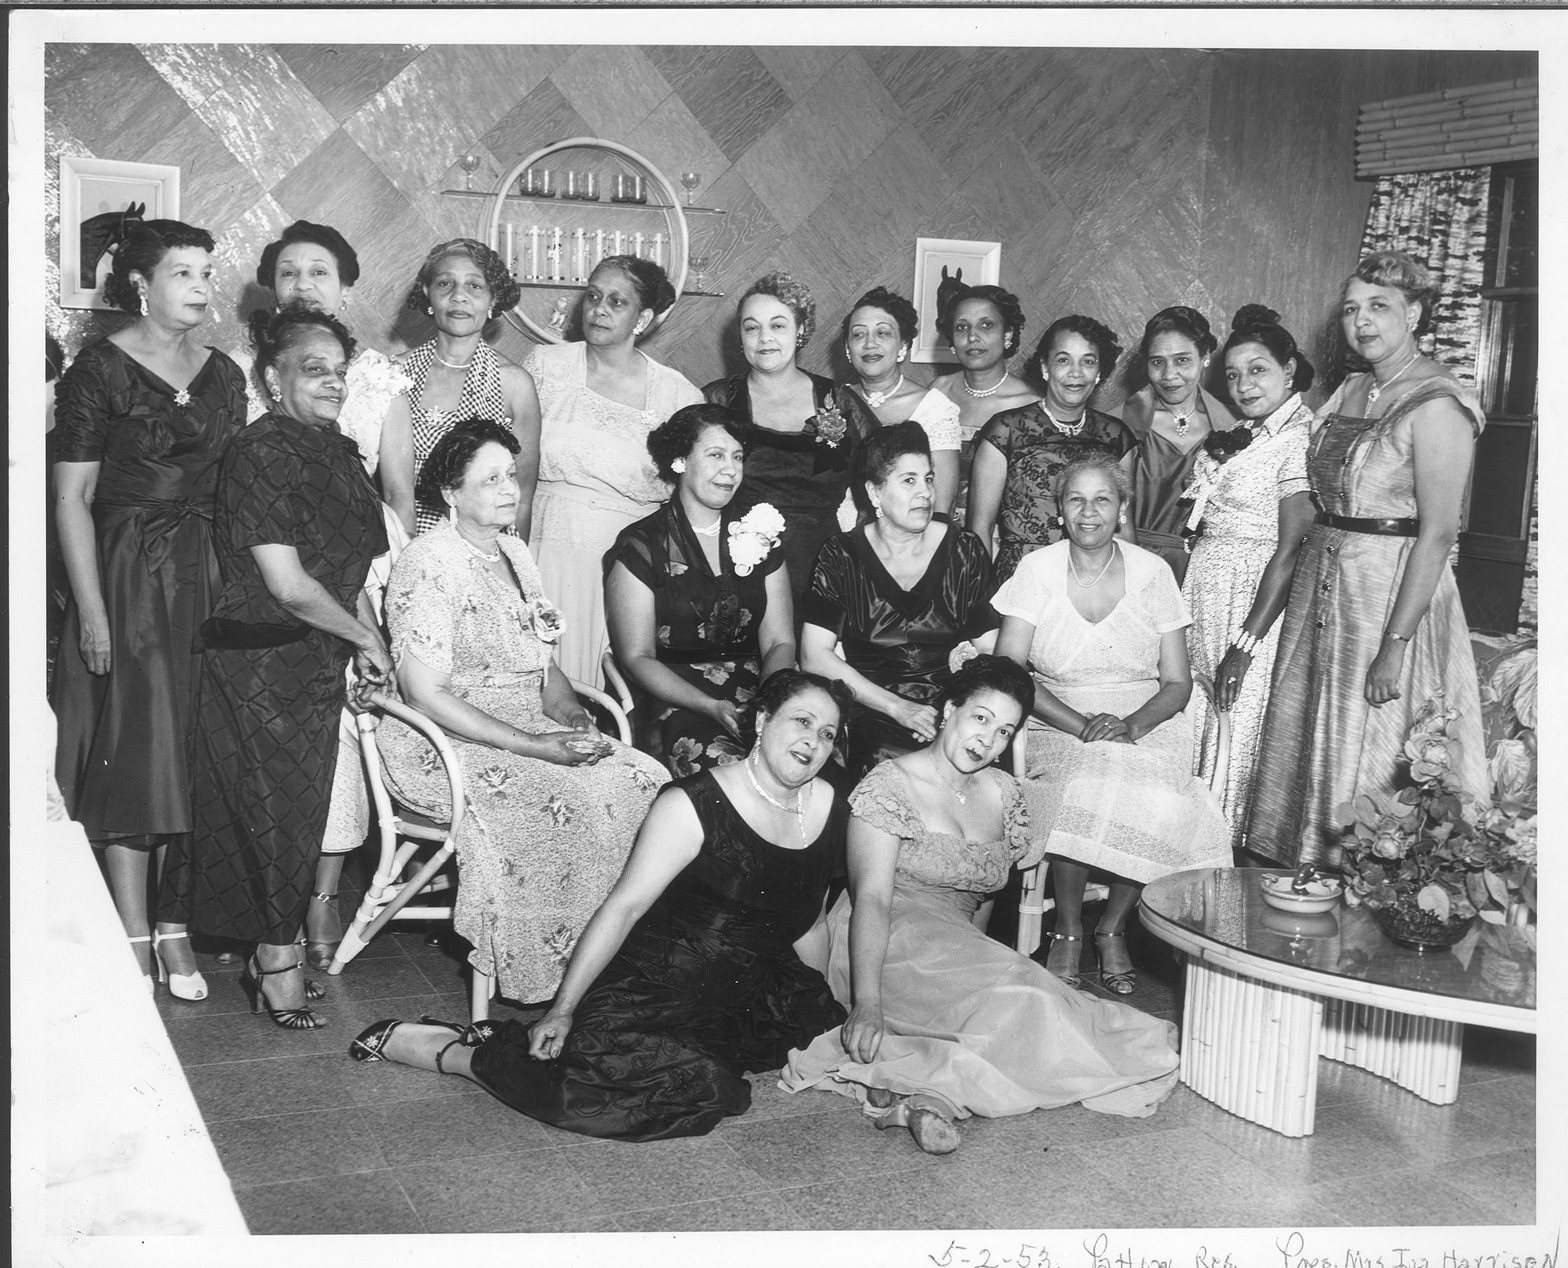 Priscilla Art Club, 1953